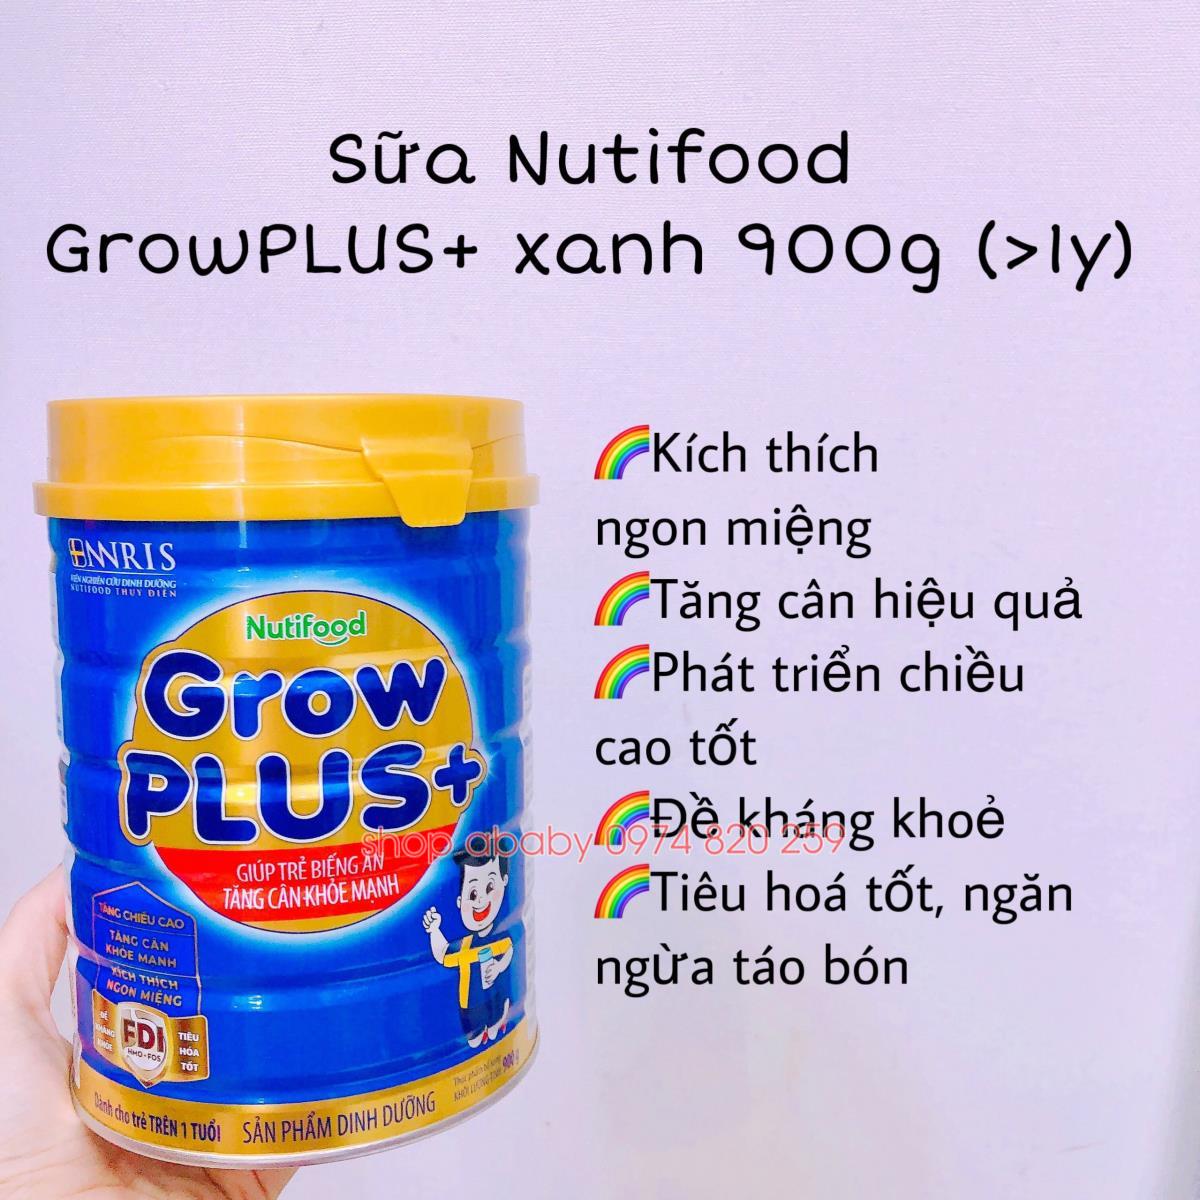 Sữa Nutifood GrowPLUS+ xanh 900g (>1y)